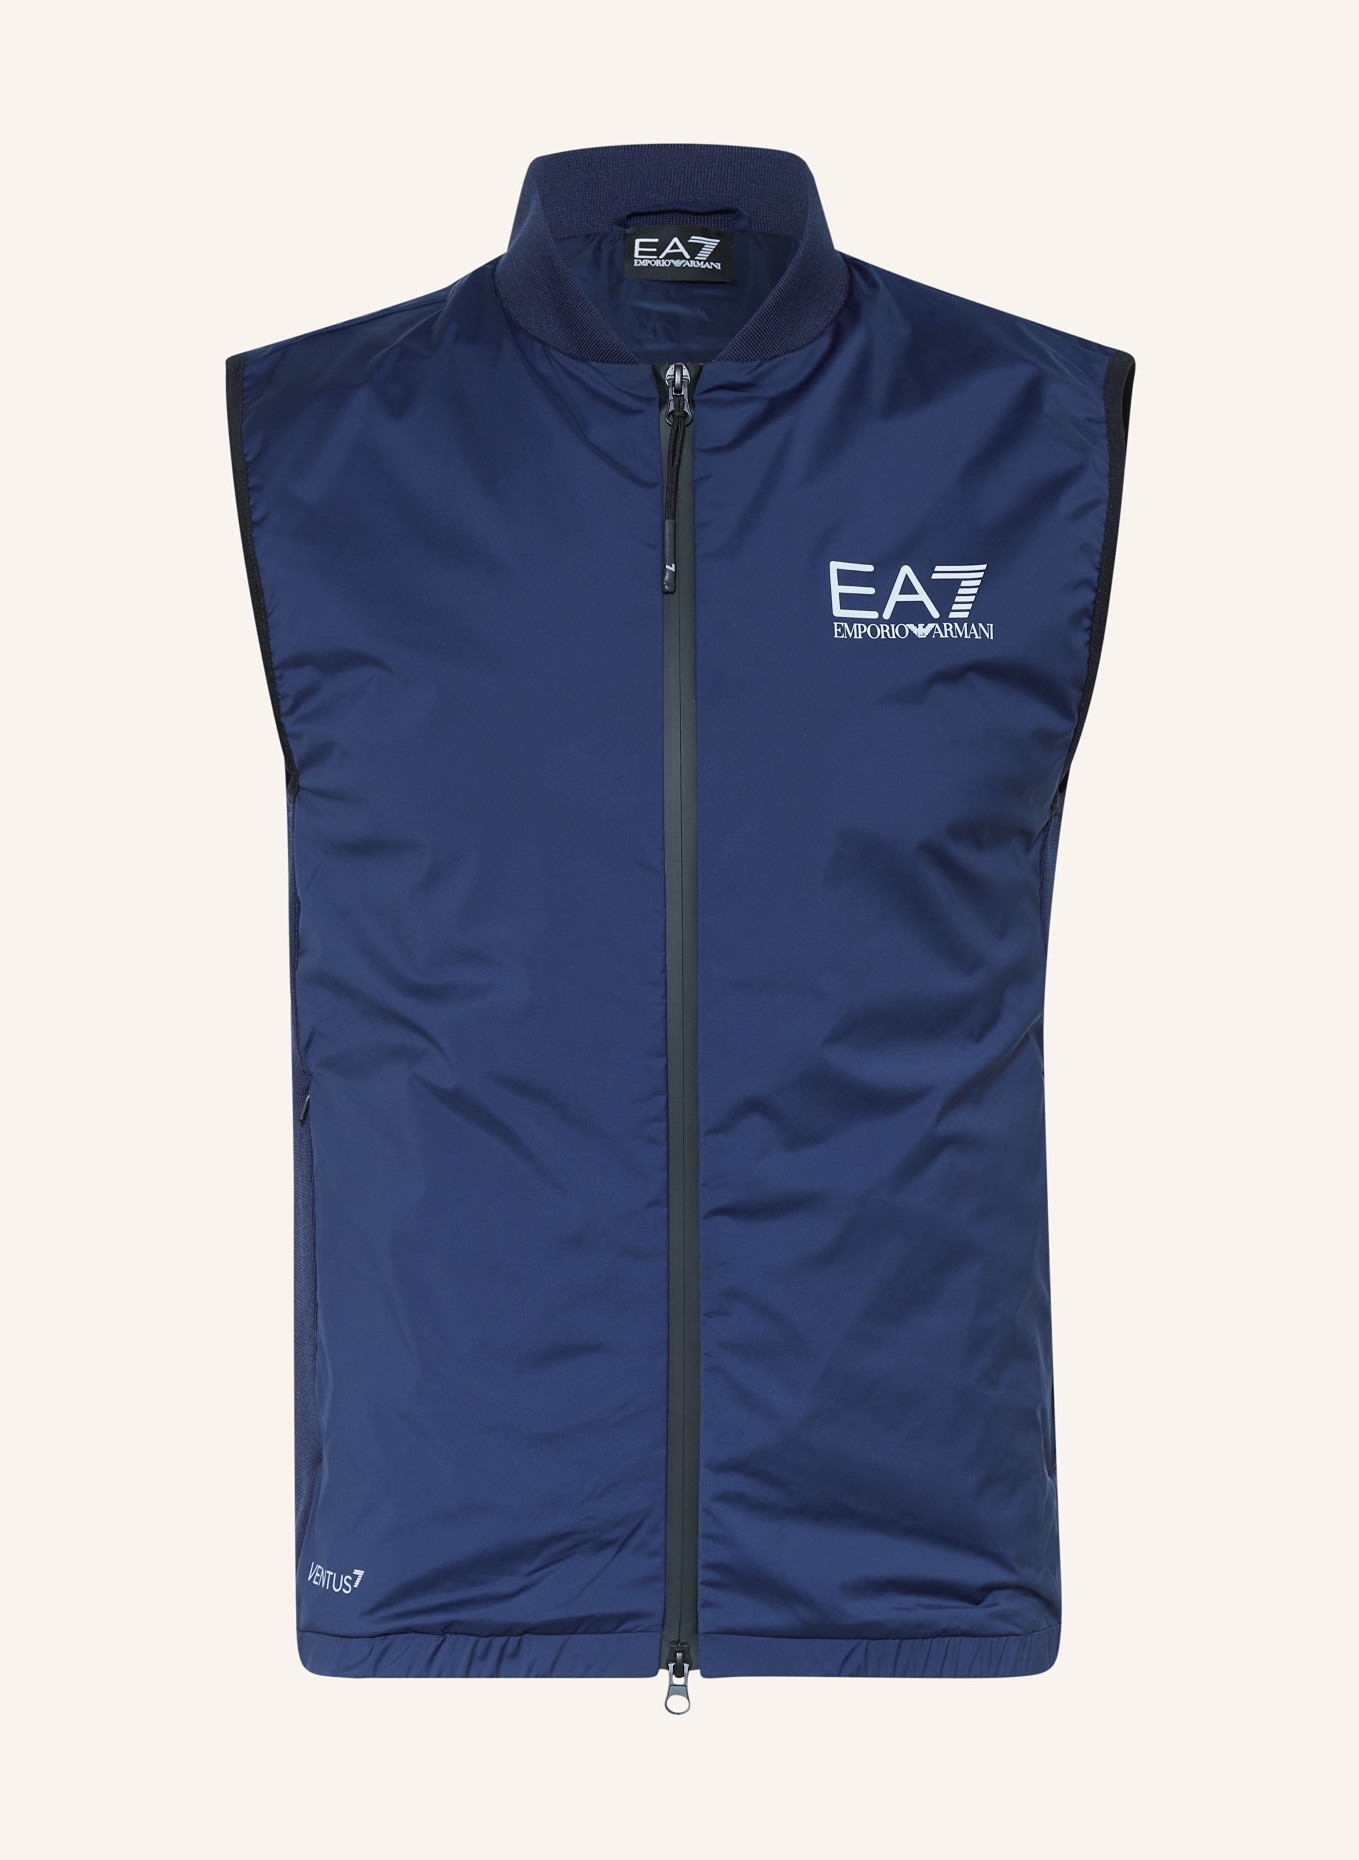 EA7 EMPORIO ARMANI Performance vest, Color: DARK BLUE (Image 1)